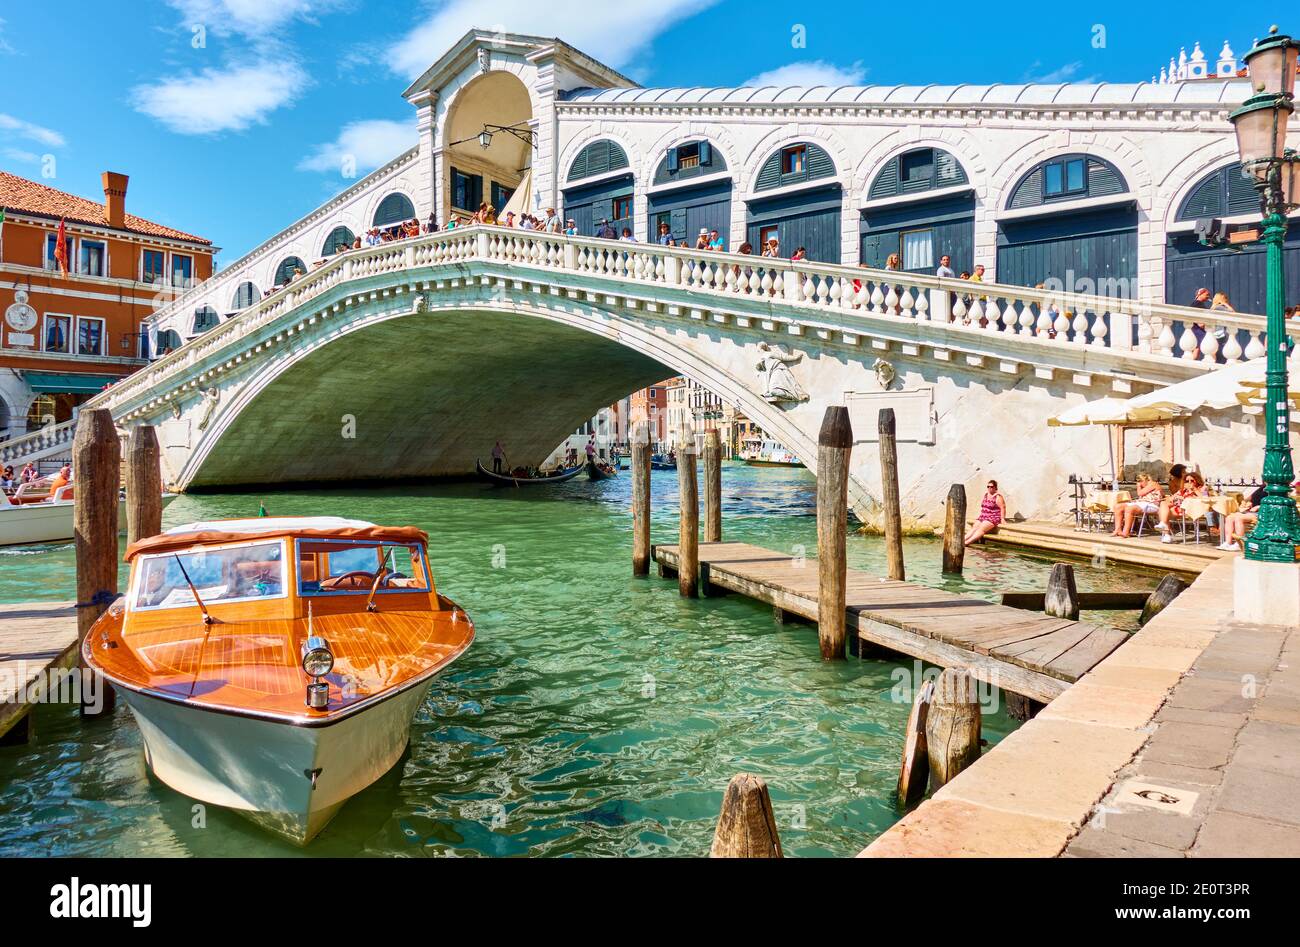 Venice, Italy - June 15, 2018: The Grand Canal and The Rialto Bridge in Venice Stock Photo